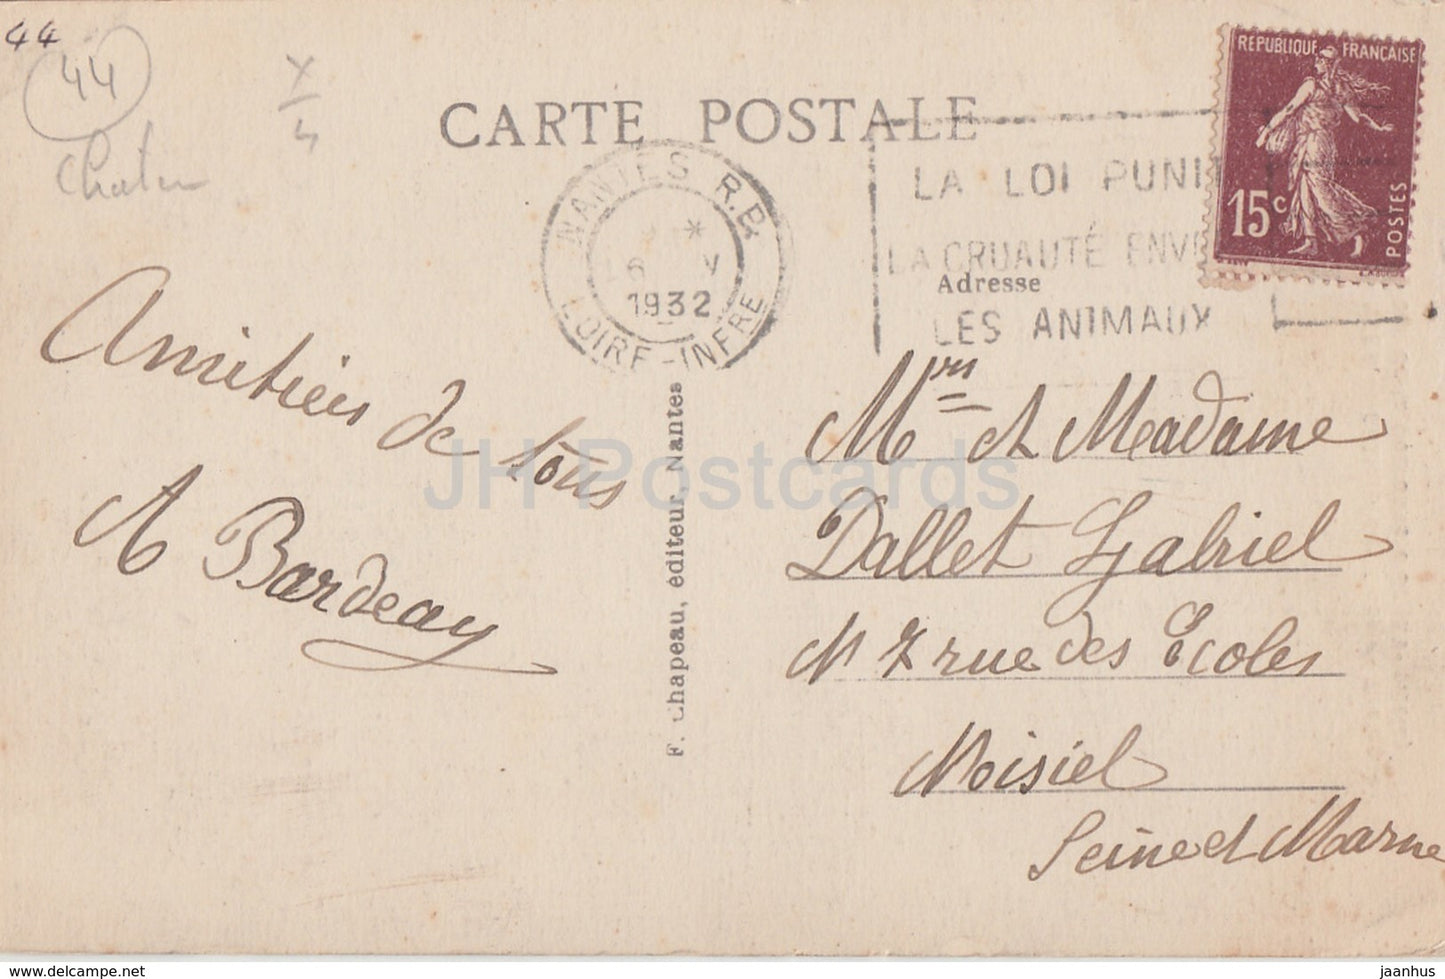 Nantes - Chateau des Ducs de Bretagne - La Tour de la Couronne d'Or - castle - 240 - old postcard - 1932 - France - used